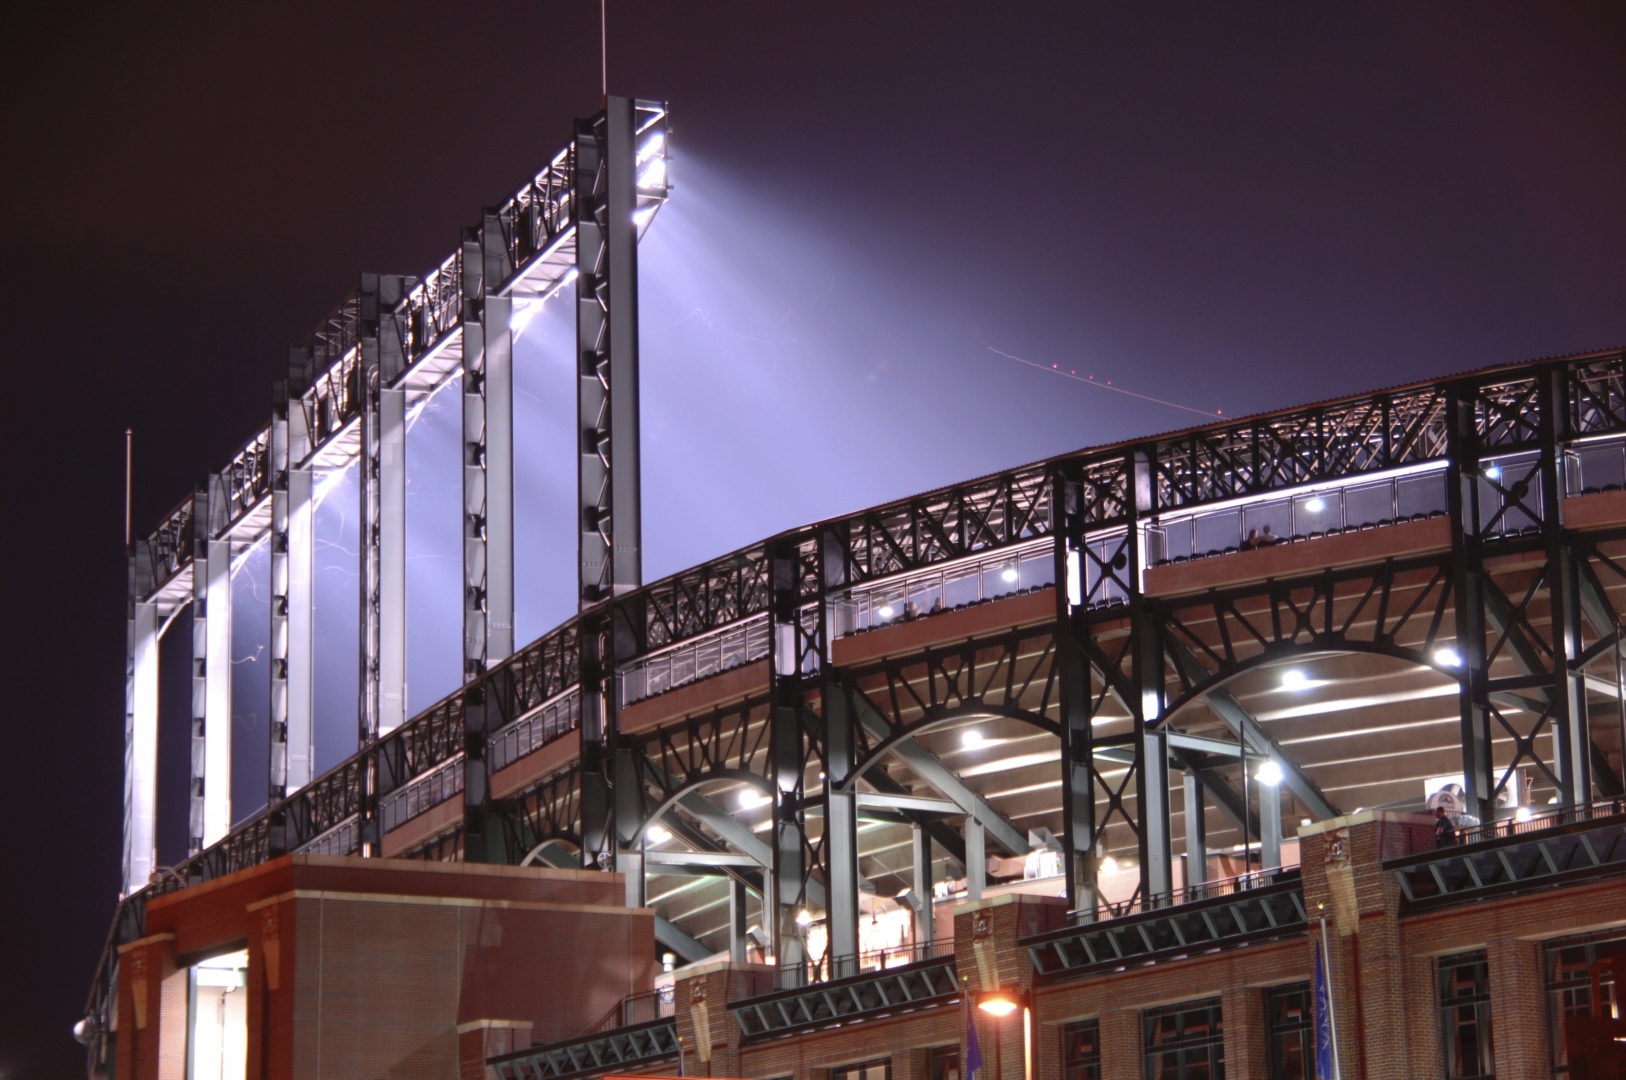 lighting in stadium